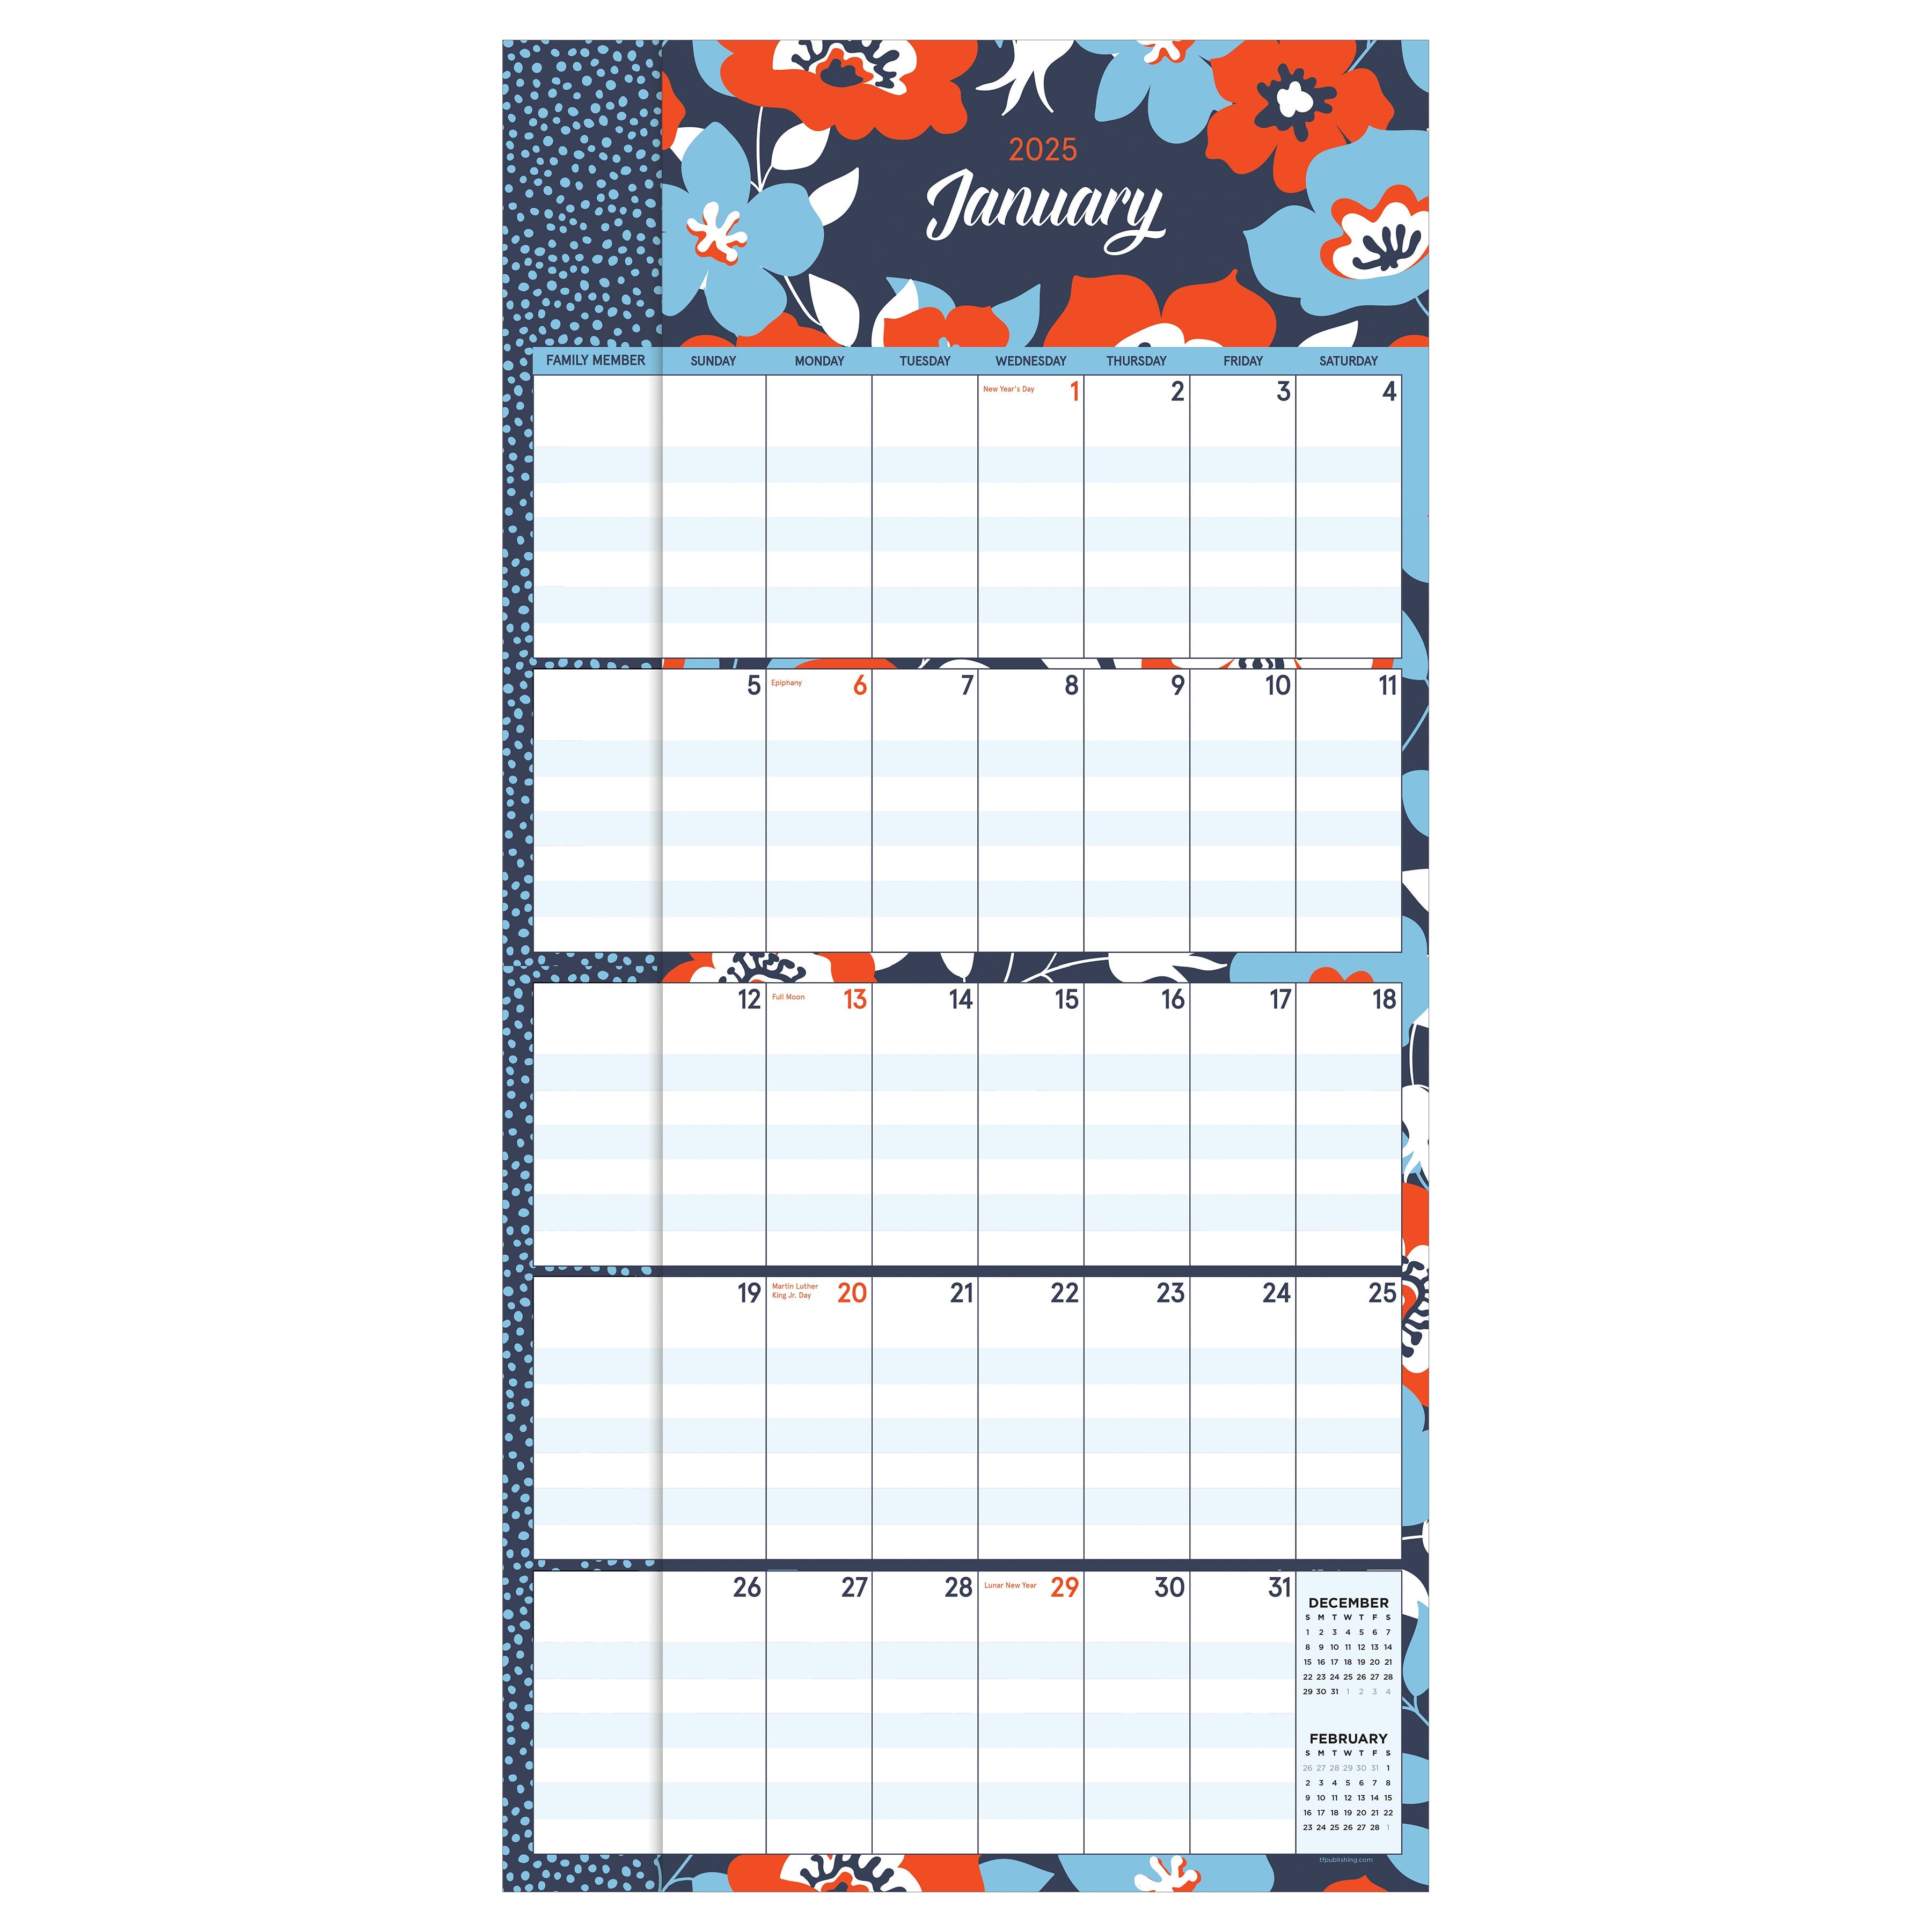 2025 Mom's Manager - Square Wall Calendar